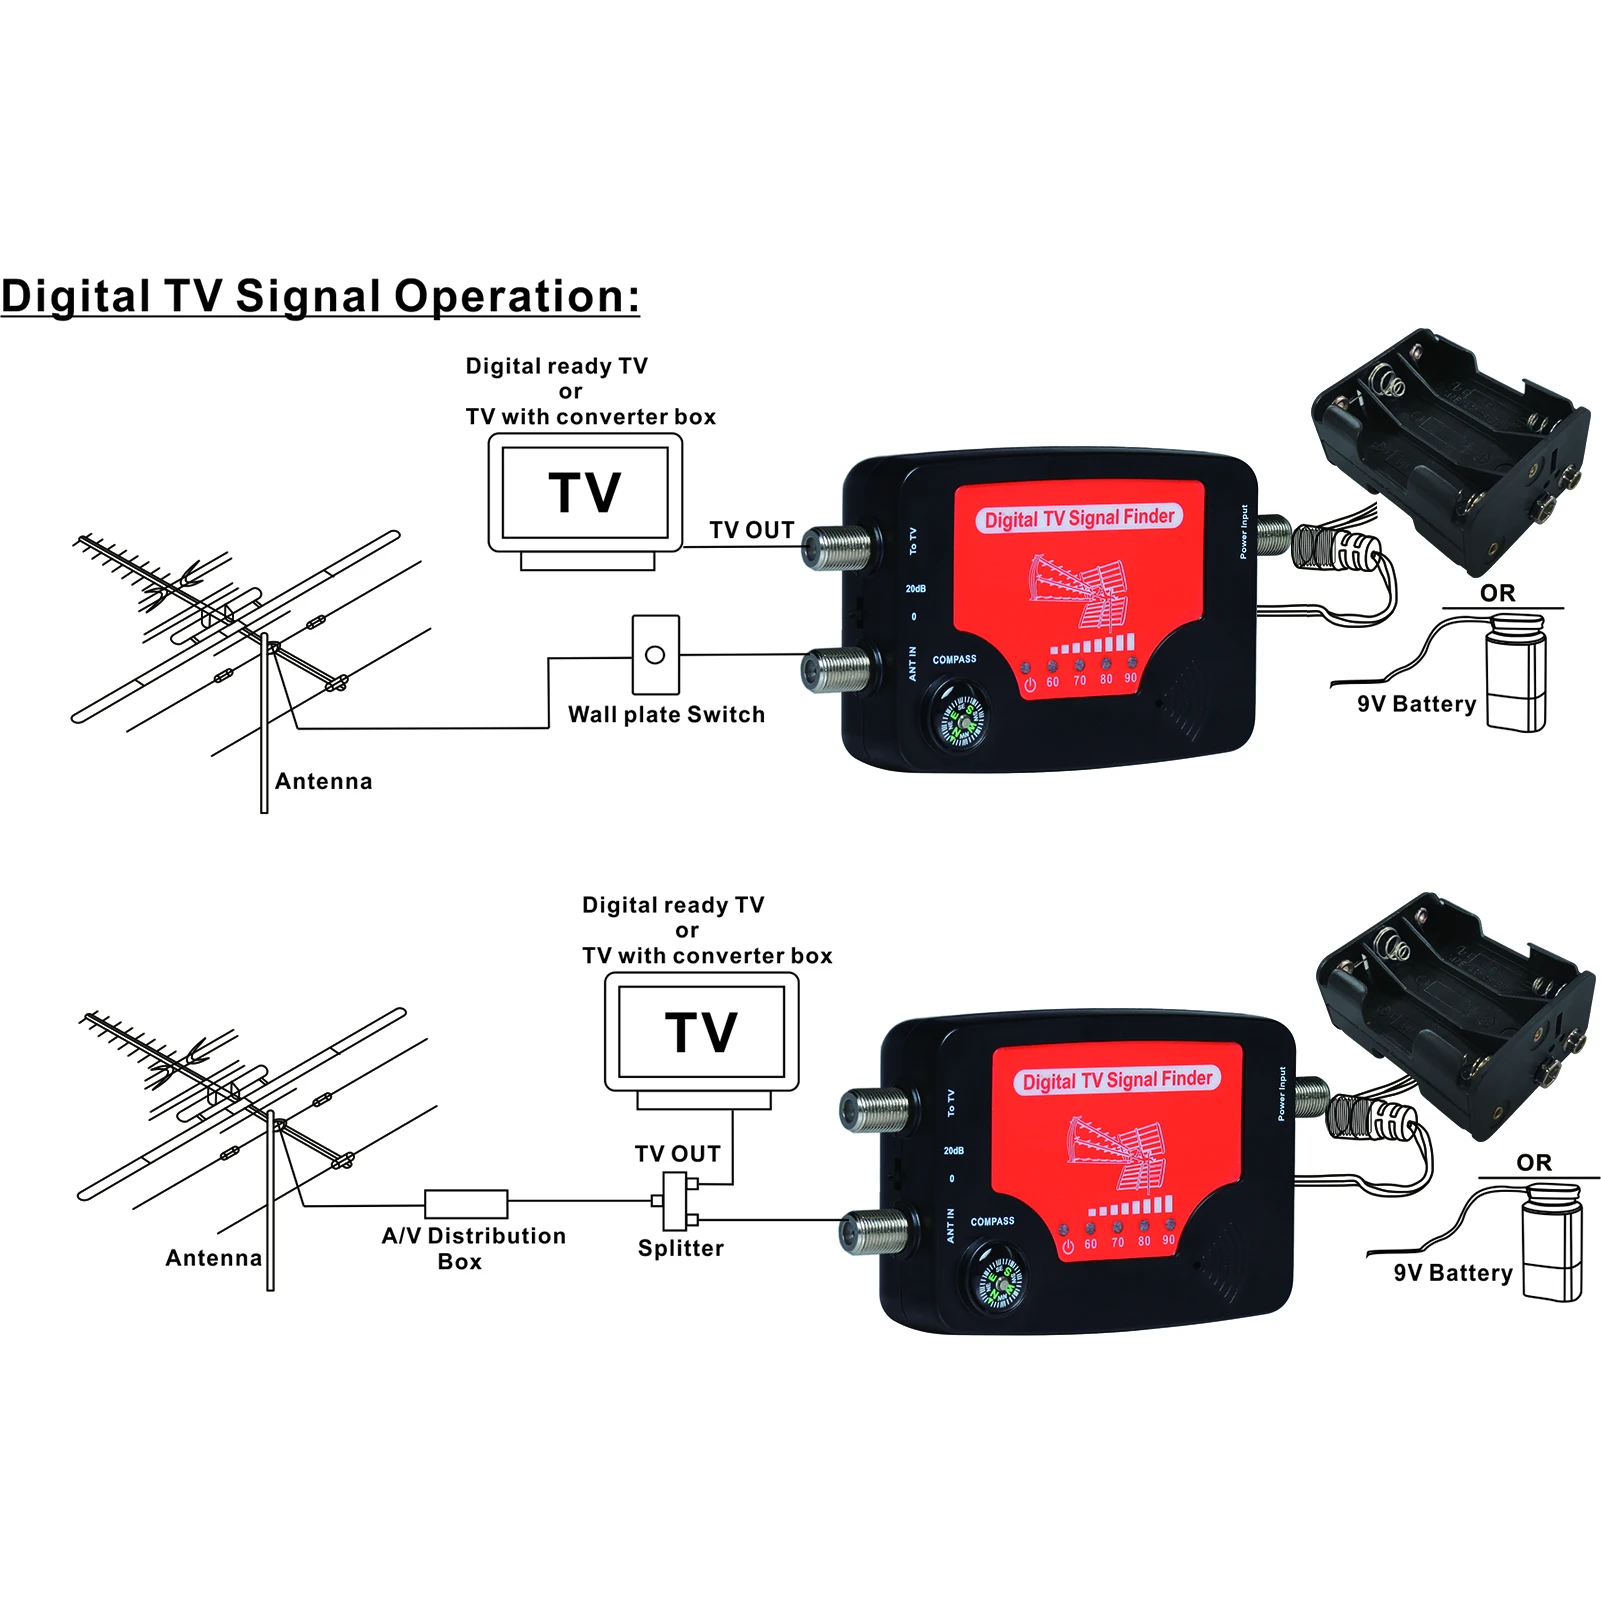 Medidor de fuerza de señal de antena de TV terrestre aérea Digital DVB-T  Finder, blanco - AliExpress